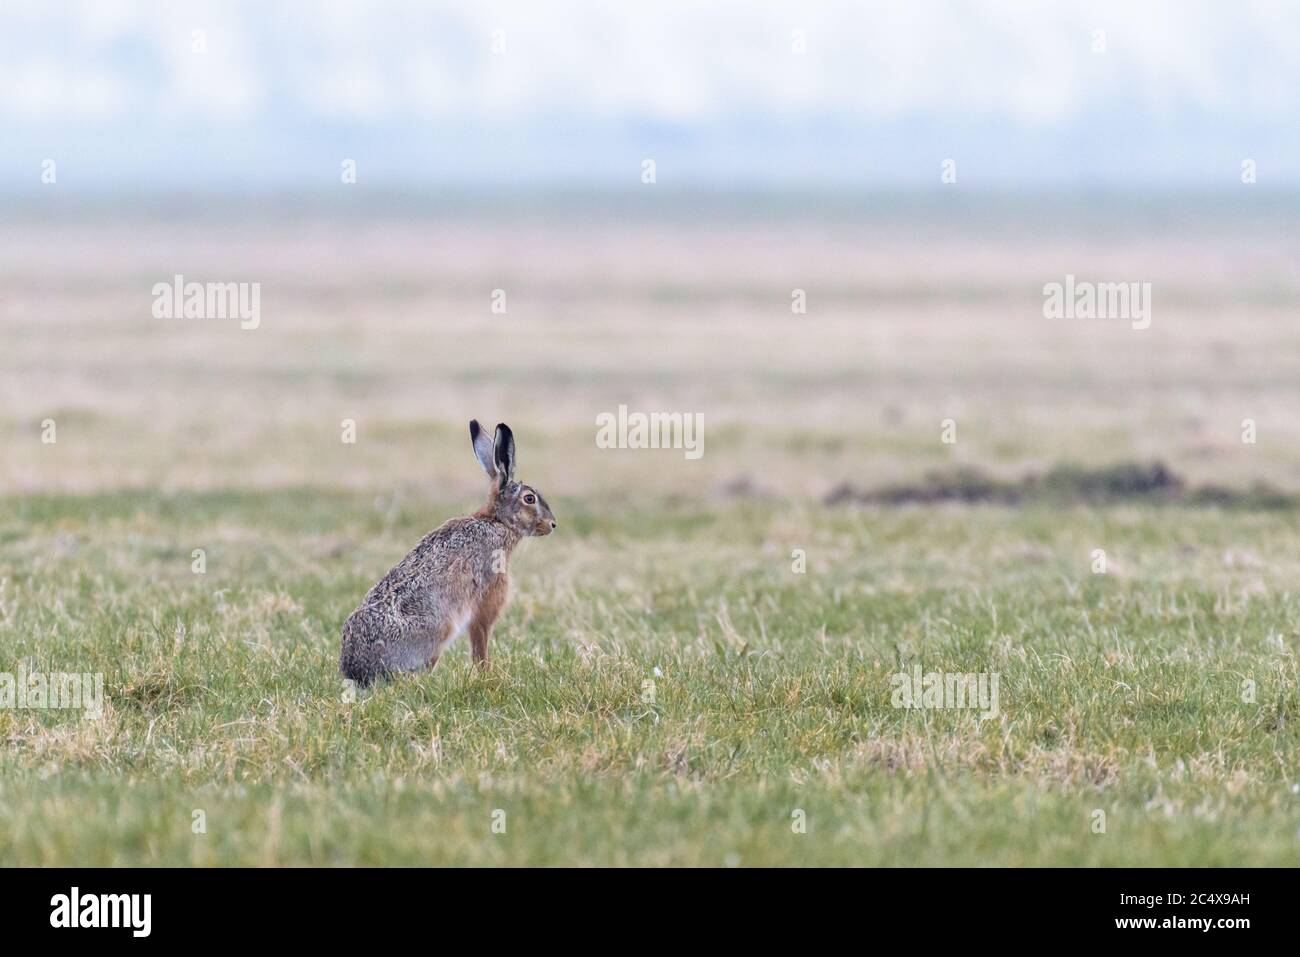 Eine europäische Hare (Lepus europaeus) ist aufrecht sitzend in einem Feld und beobachtet seine Umgebung. Stockfoto